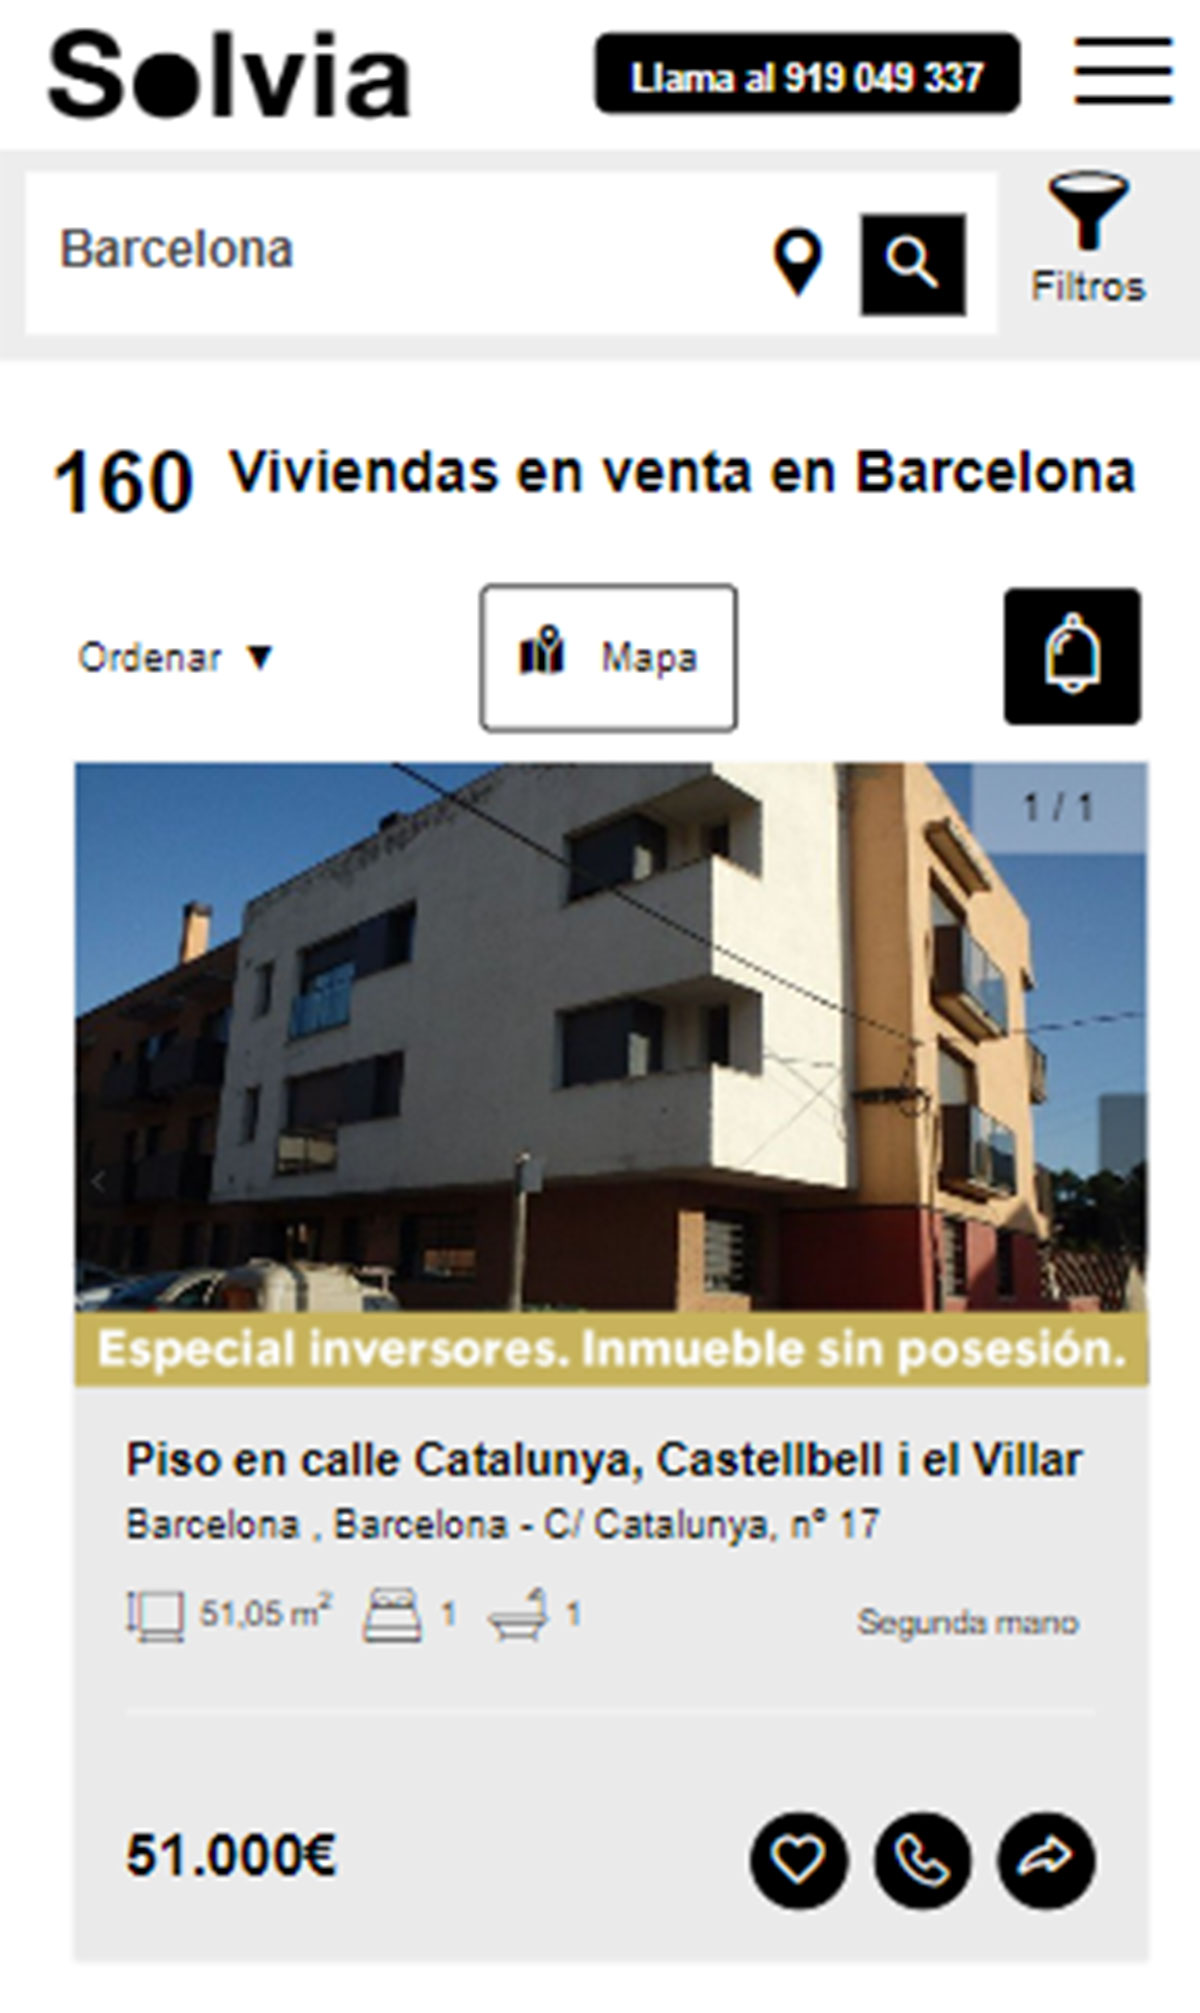 Piso en Barcelona por 51.000 euros